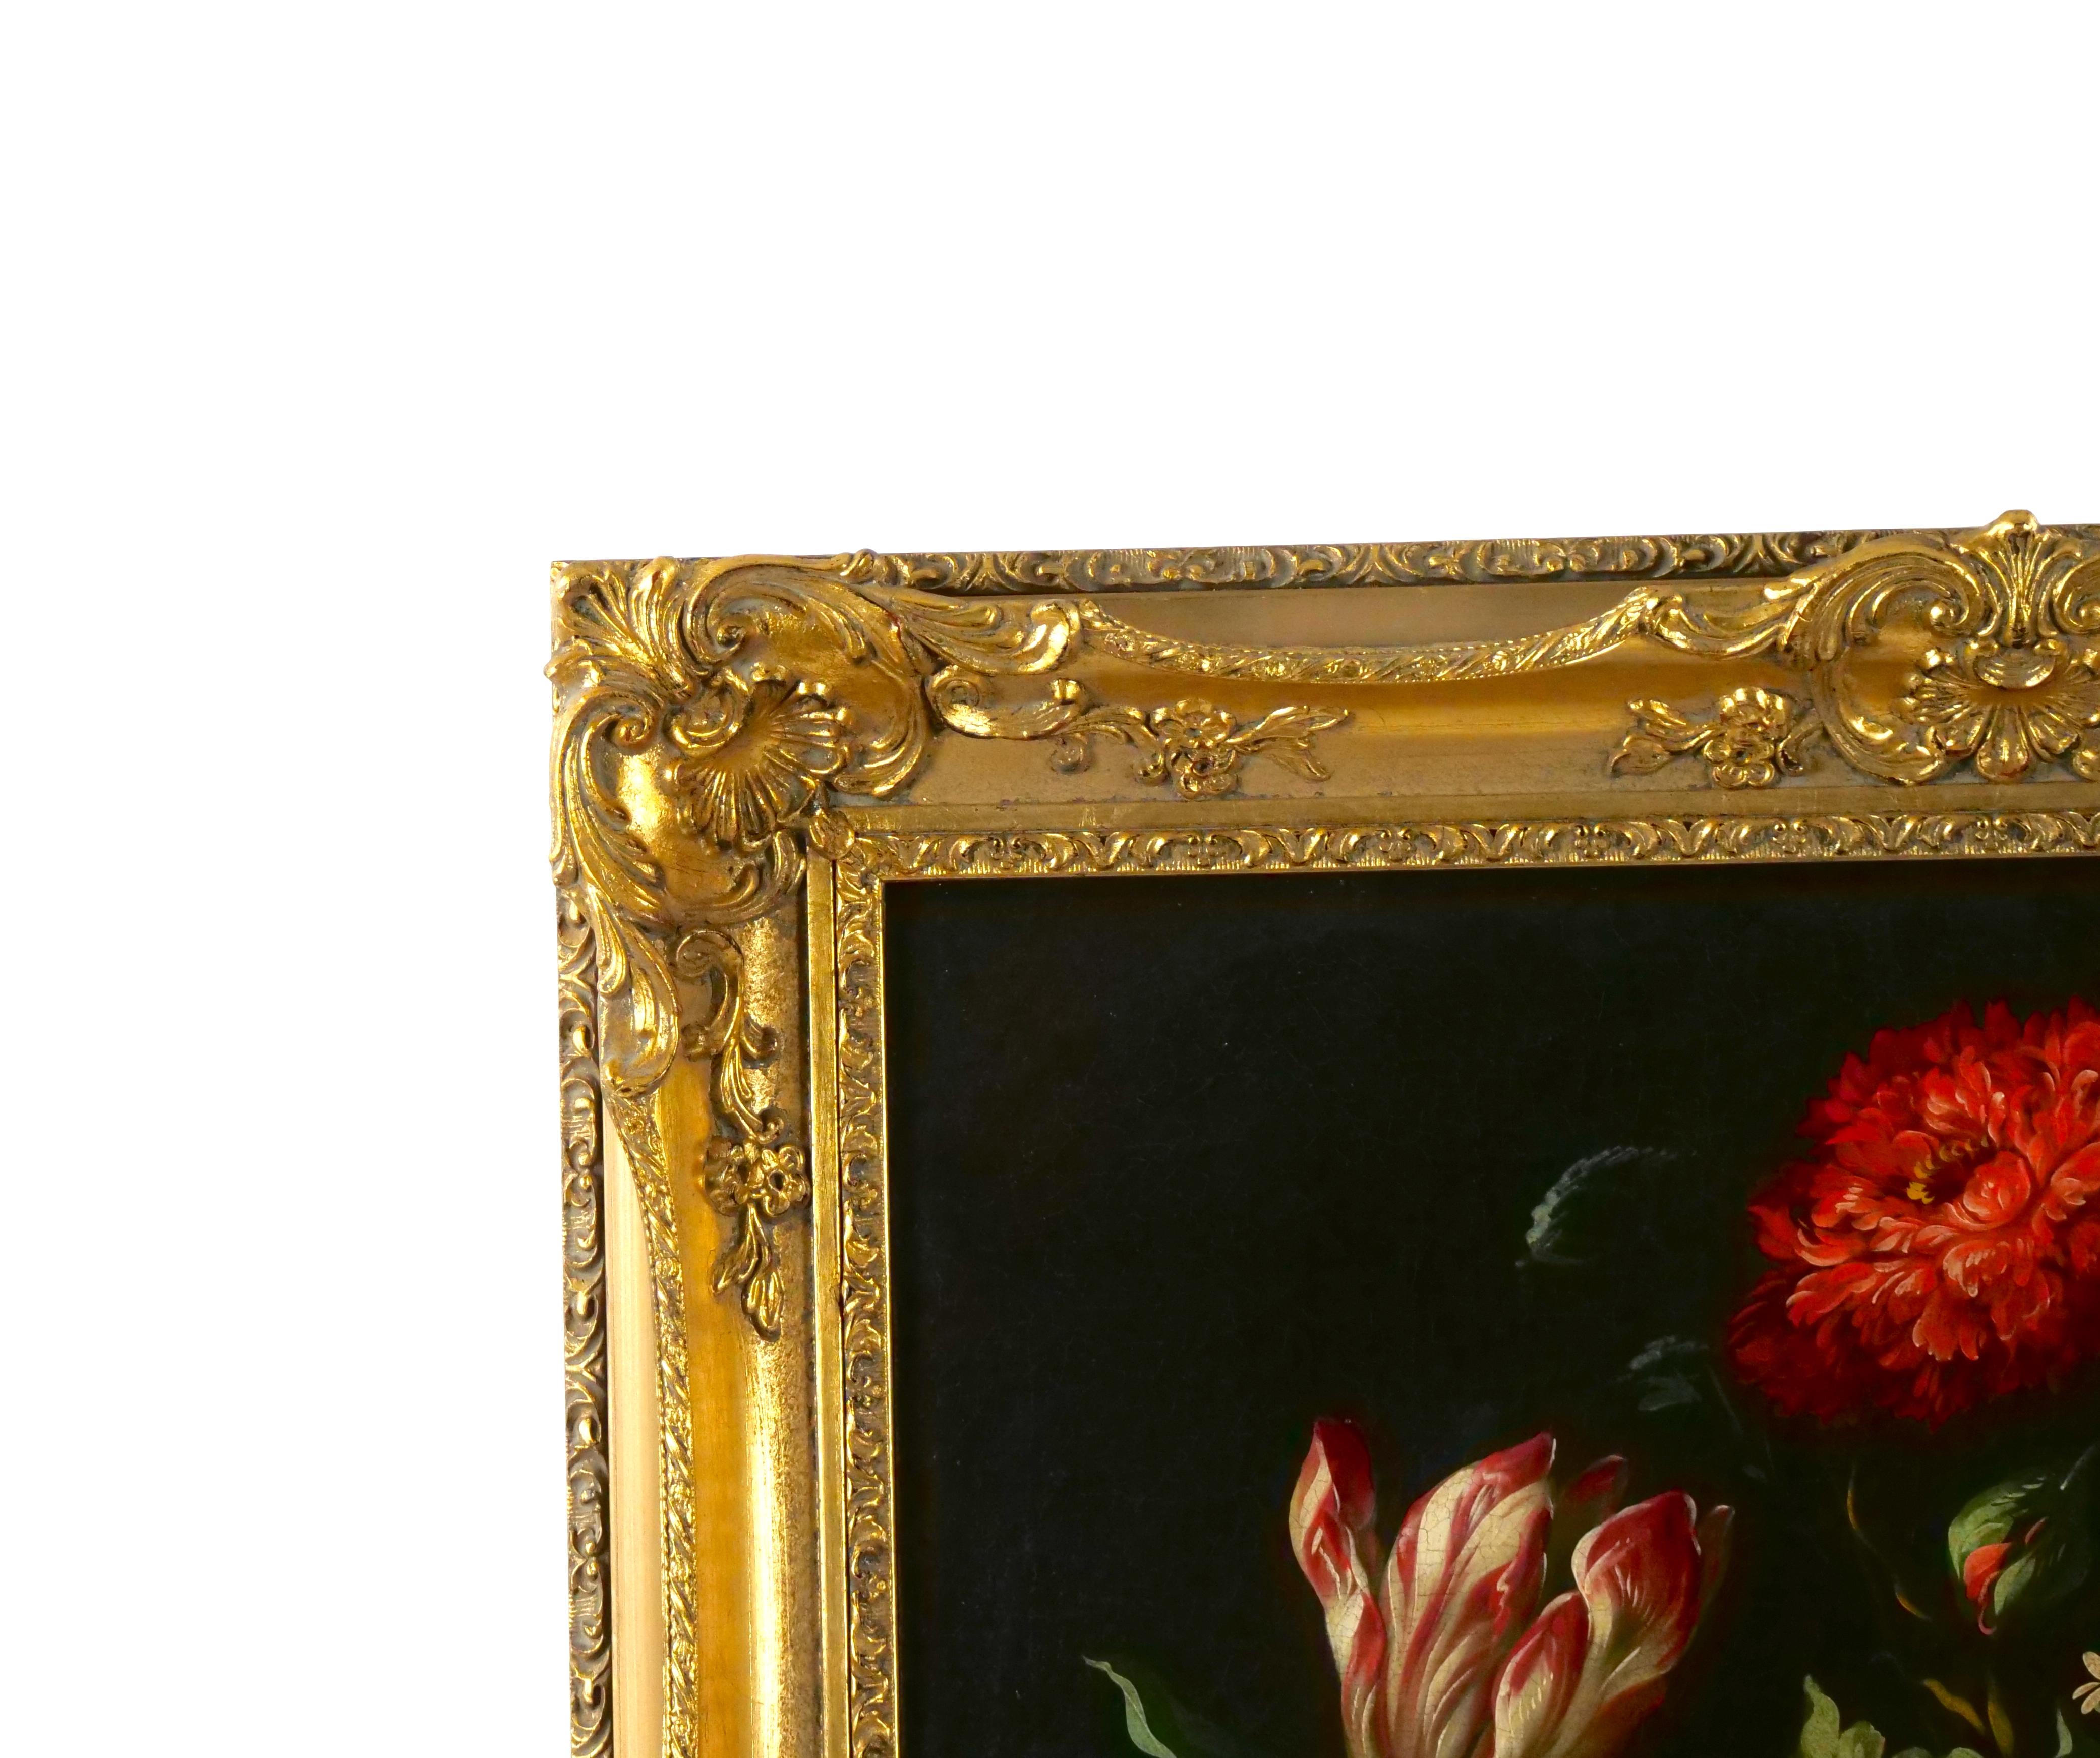 Versetzen Sie sich in die Eleganz des 19. Jahrhunderts mit diesem fesselnden, mit vergoldetem Holz gerahmten Ölgemälde auf Leinwand mit Kranz und Blumenstillleben. Dieses sorgfältig gefertigte Stück verkörpert die zeitlose Anziehungskraft der